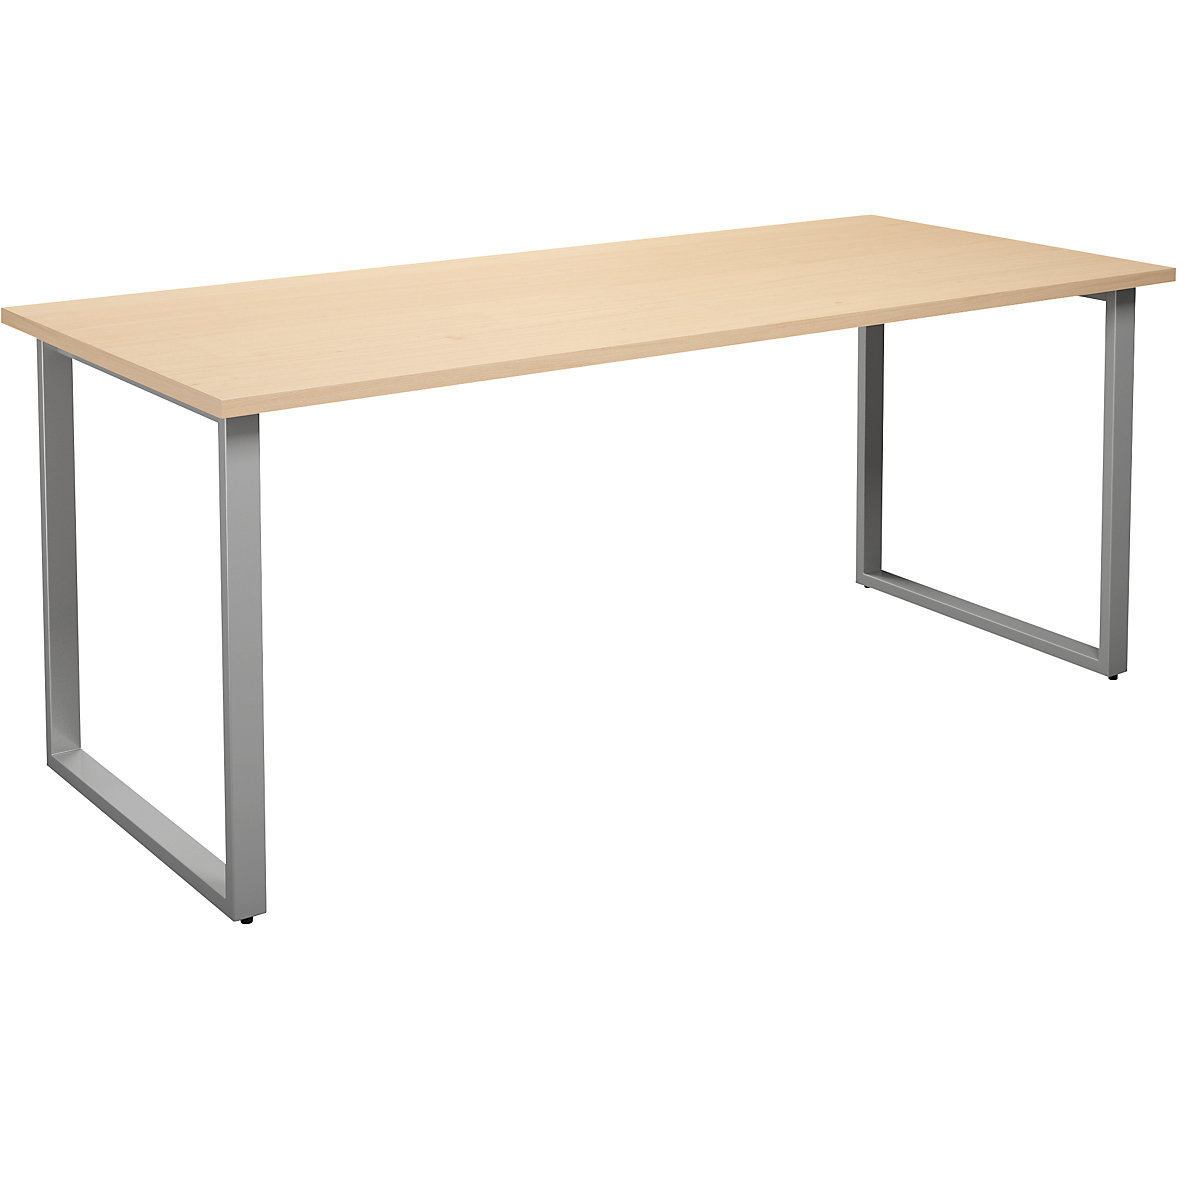 DUO-O univerzális asztal, egyenes asztallappal